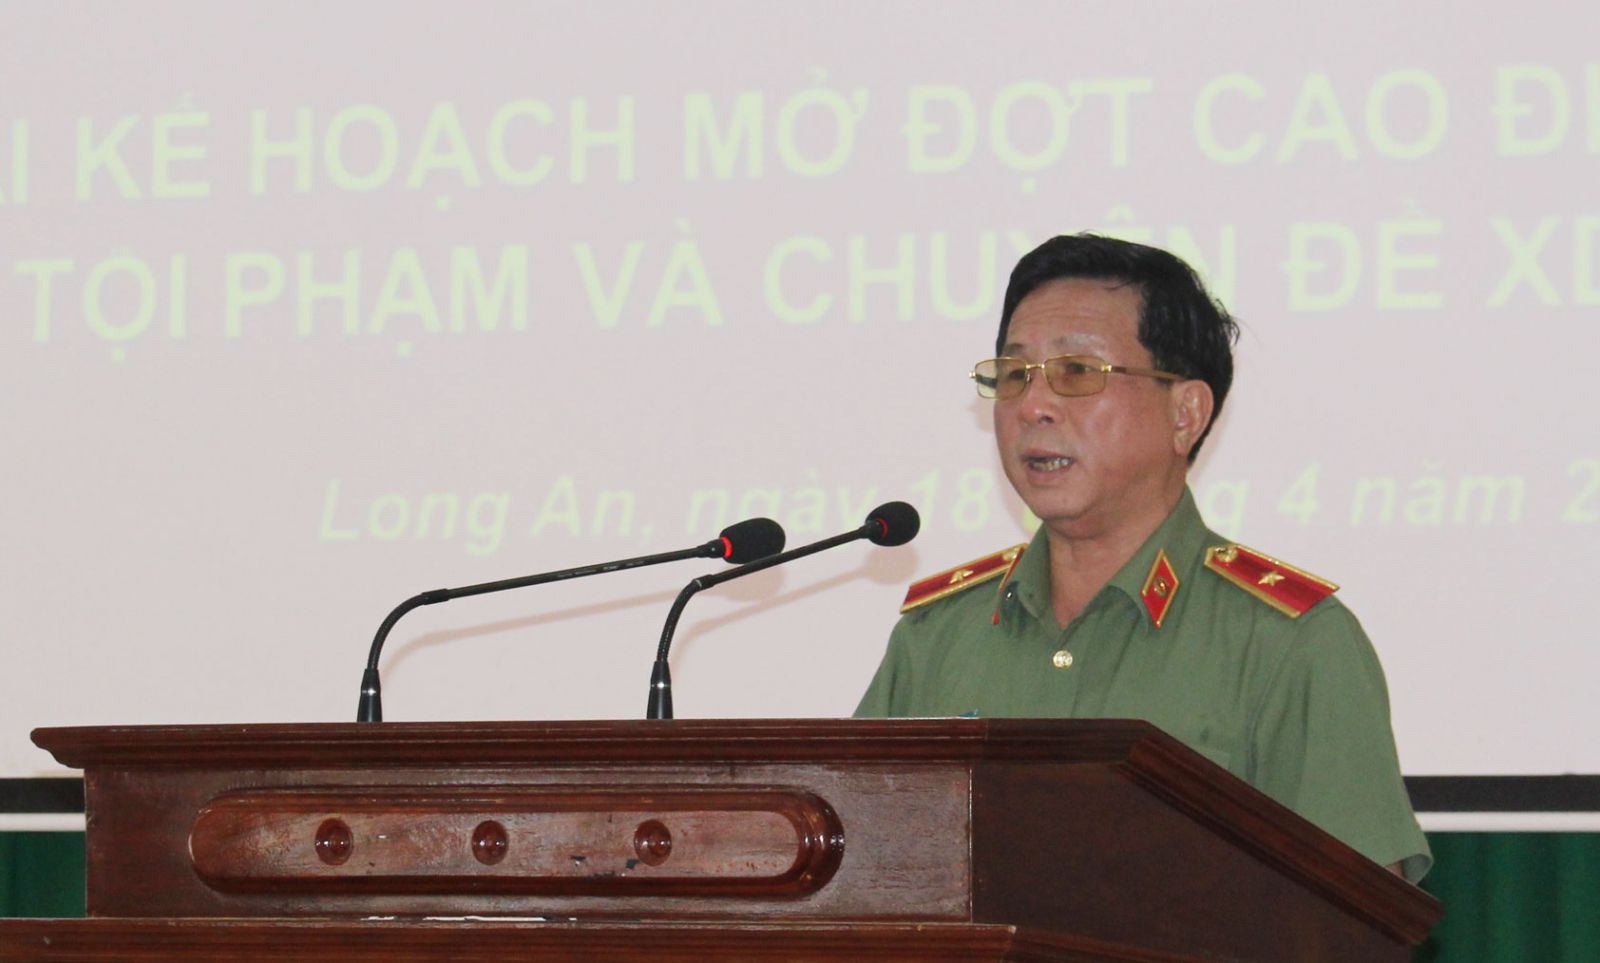 Thiếu tướng Phan Chí Thanh - Giám đốc Công an tỉnh chỉ đạo các lực lượng tập trung tấn công tội phạm, đảm bảo ANTT lễ 30/4, 1/5 năm 2018